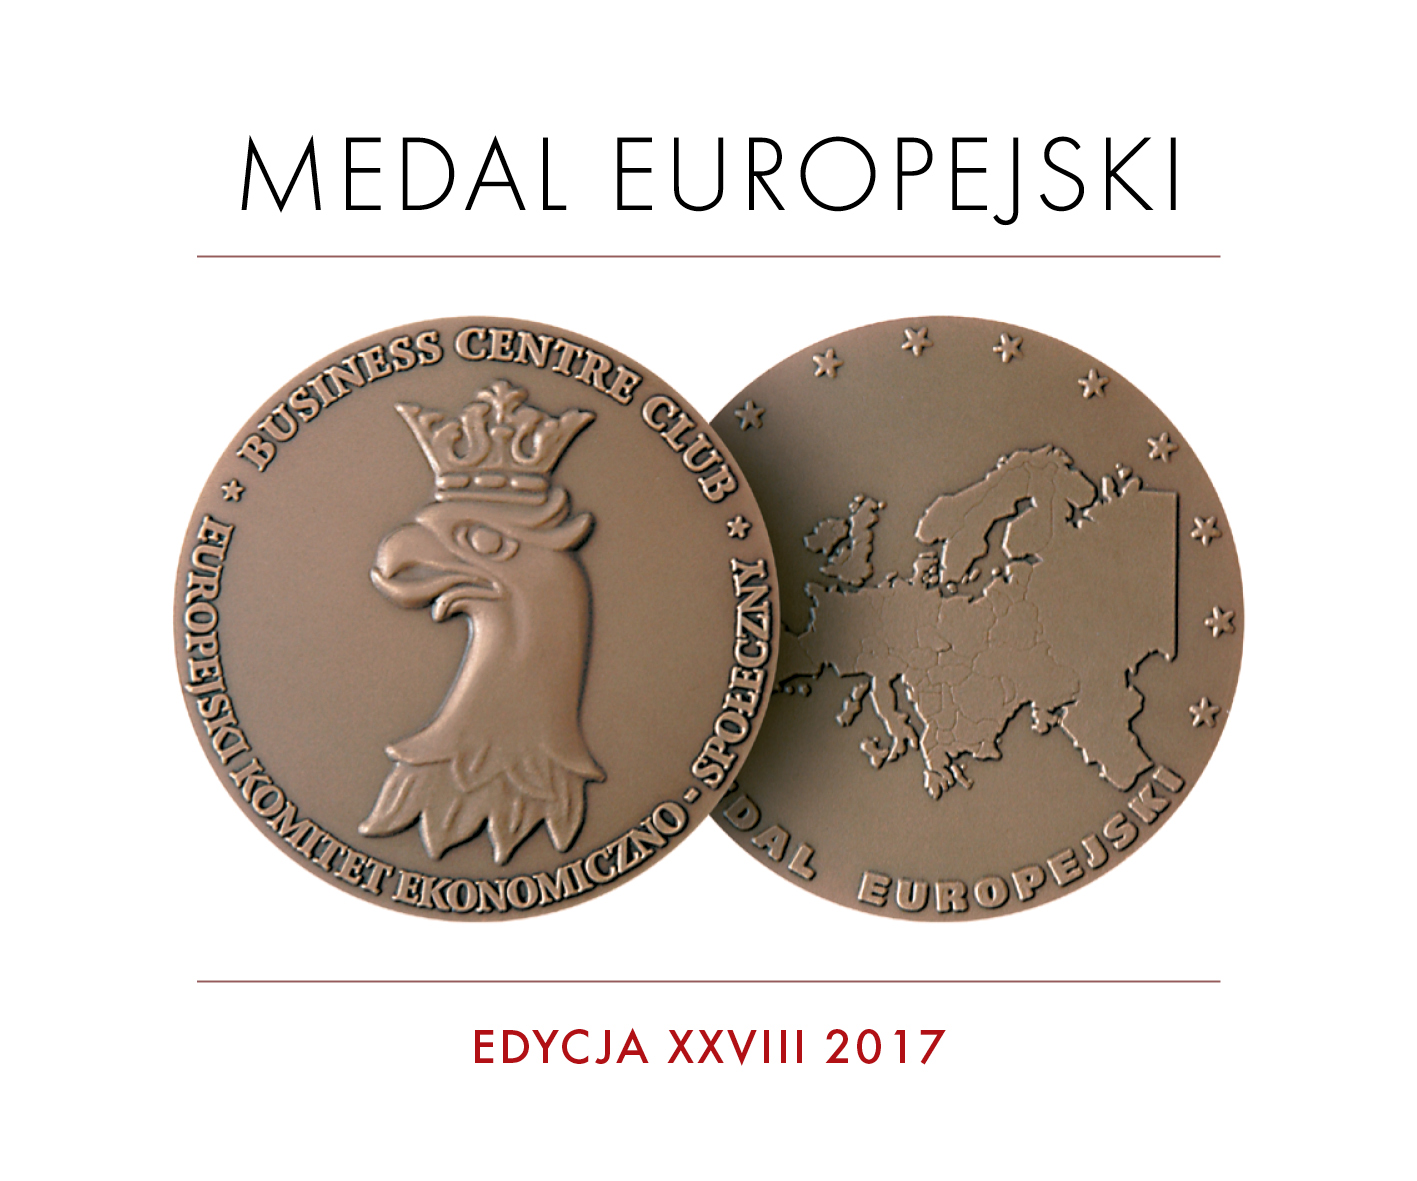 07.06.2017 MEDAL EUROPEJSKI dla solvadis polska sp. z o.o.